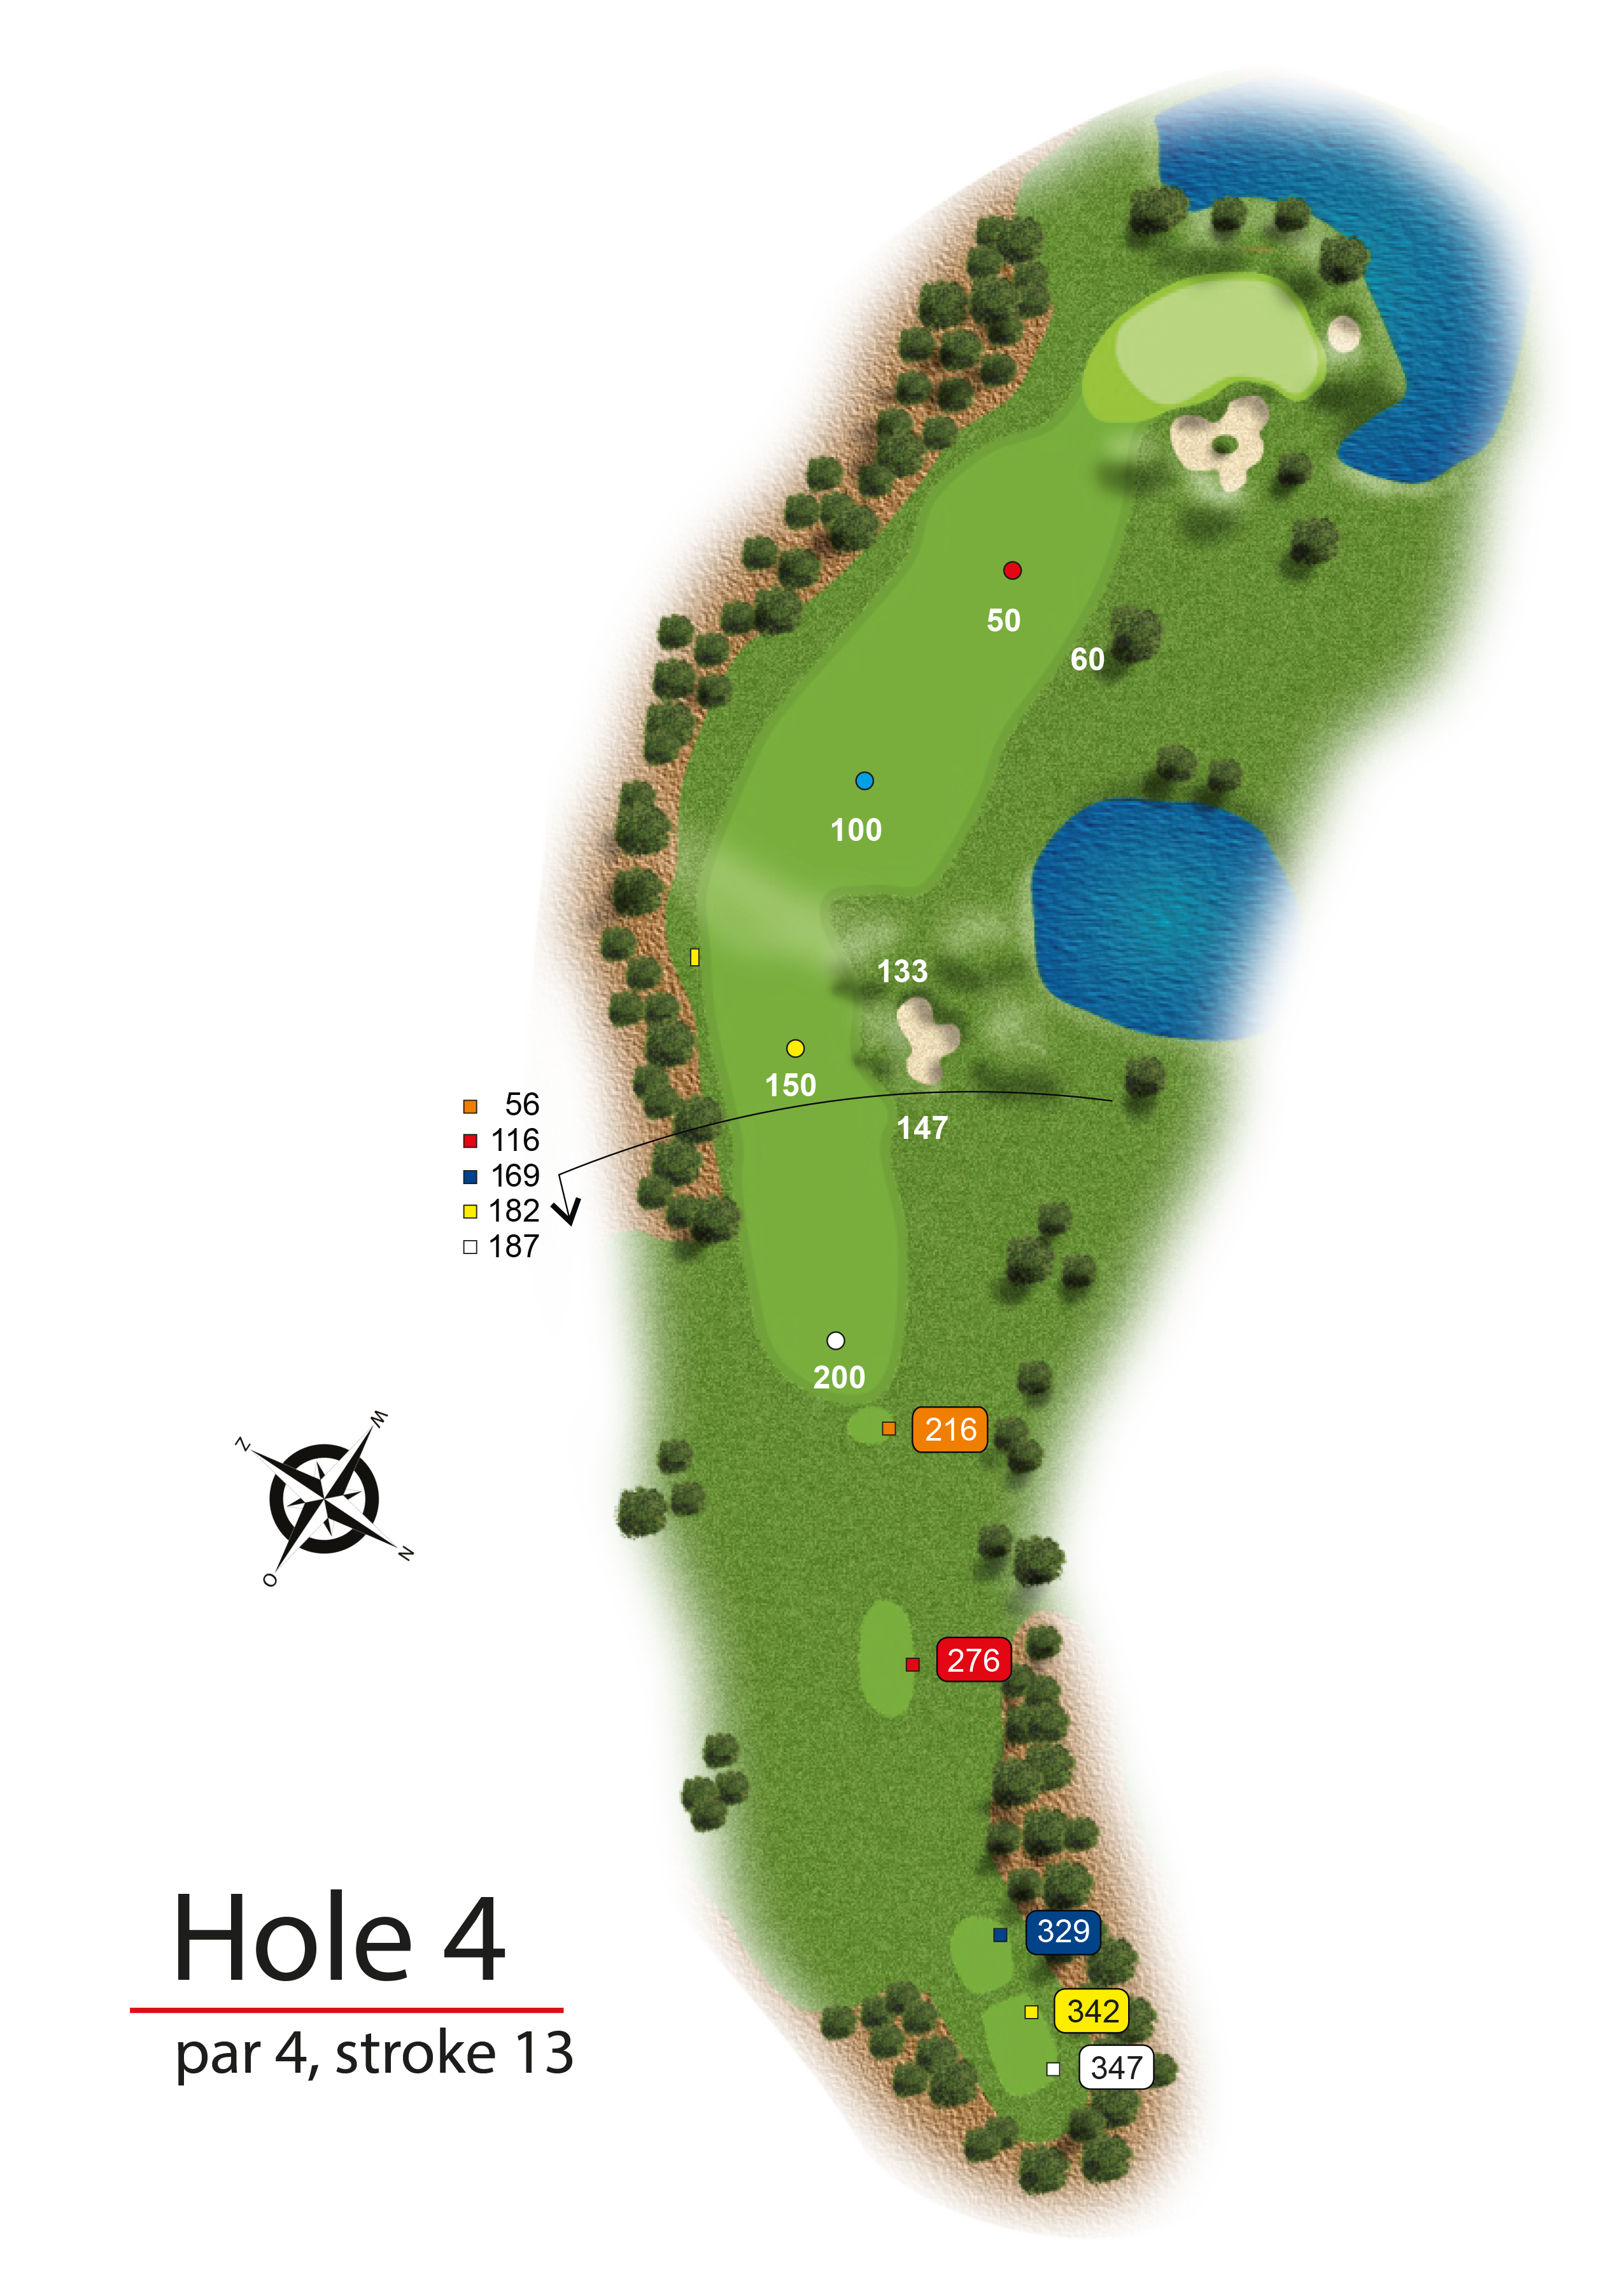 Hole 4 - simple